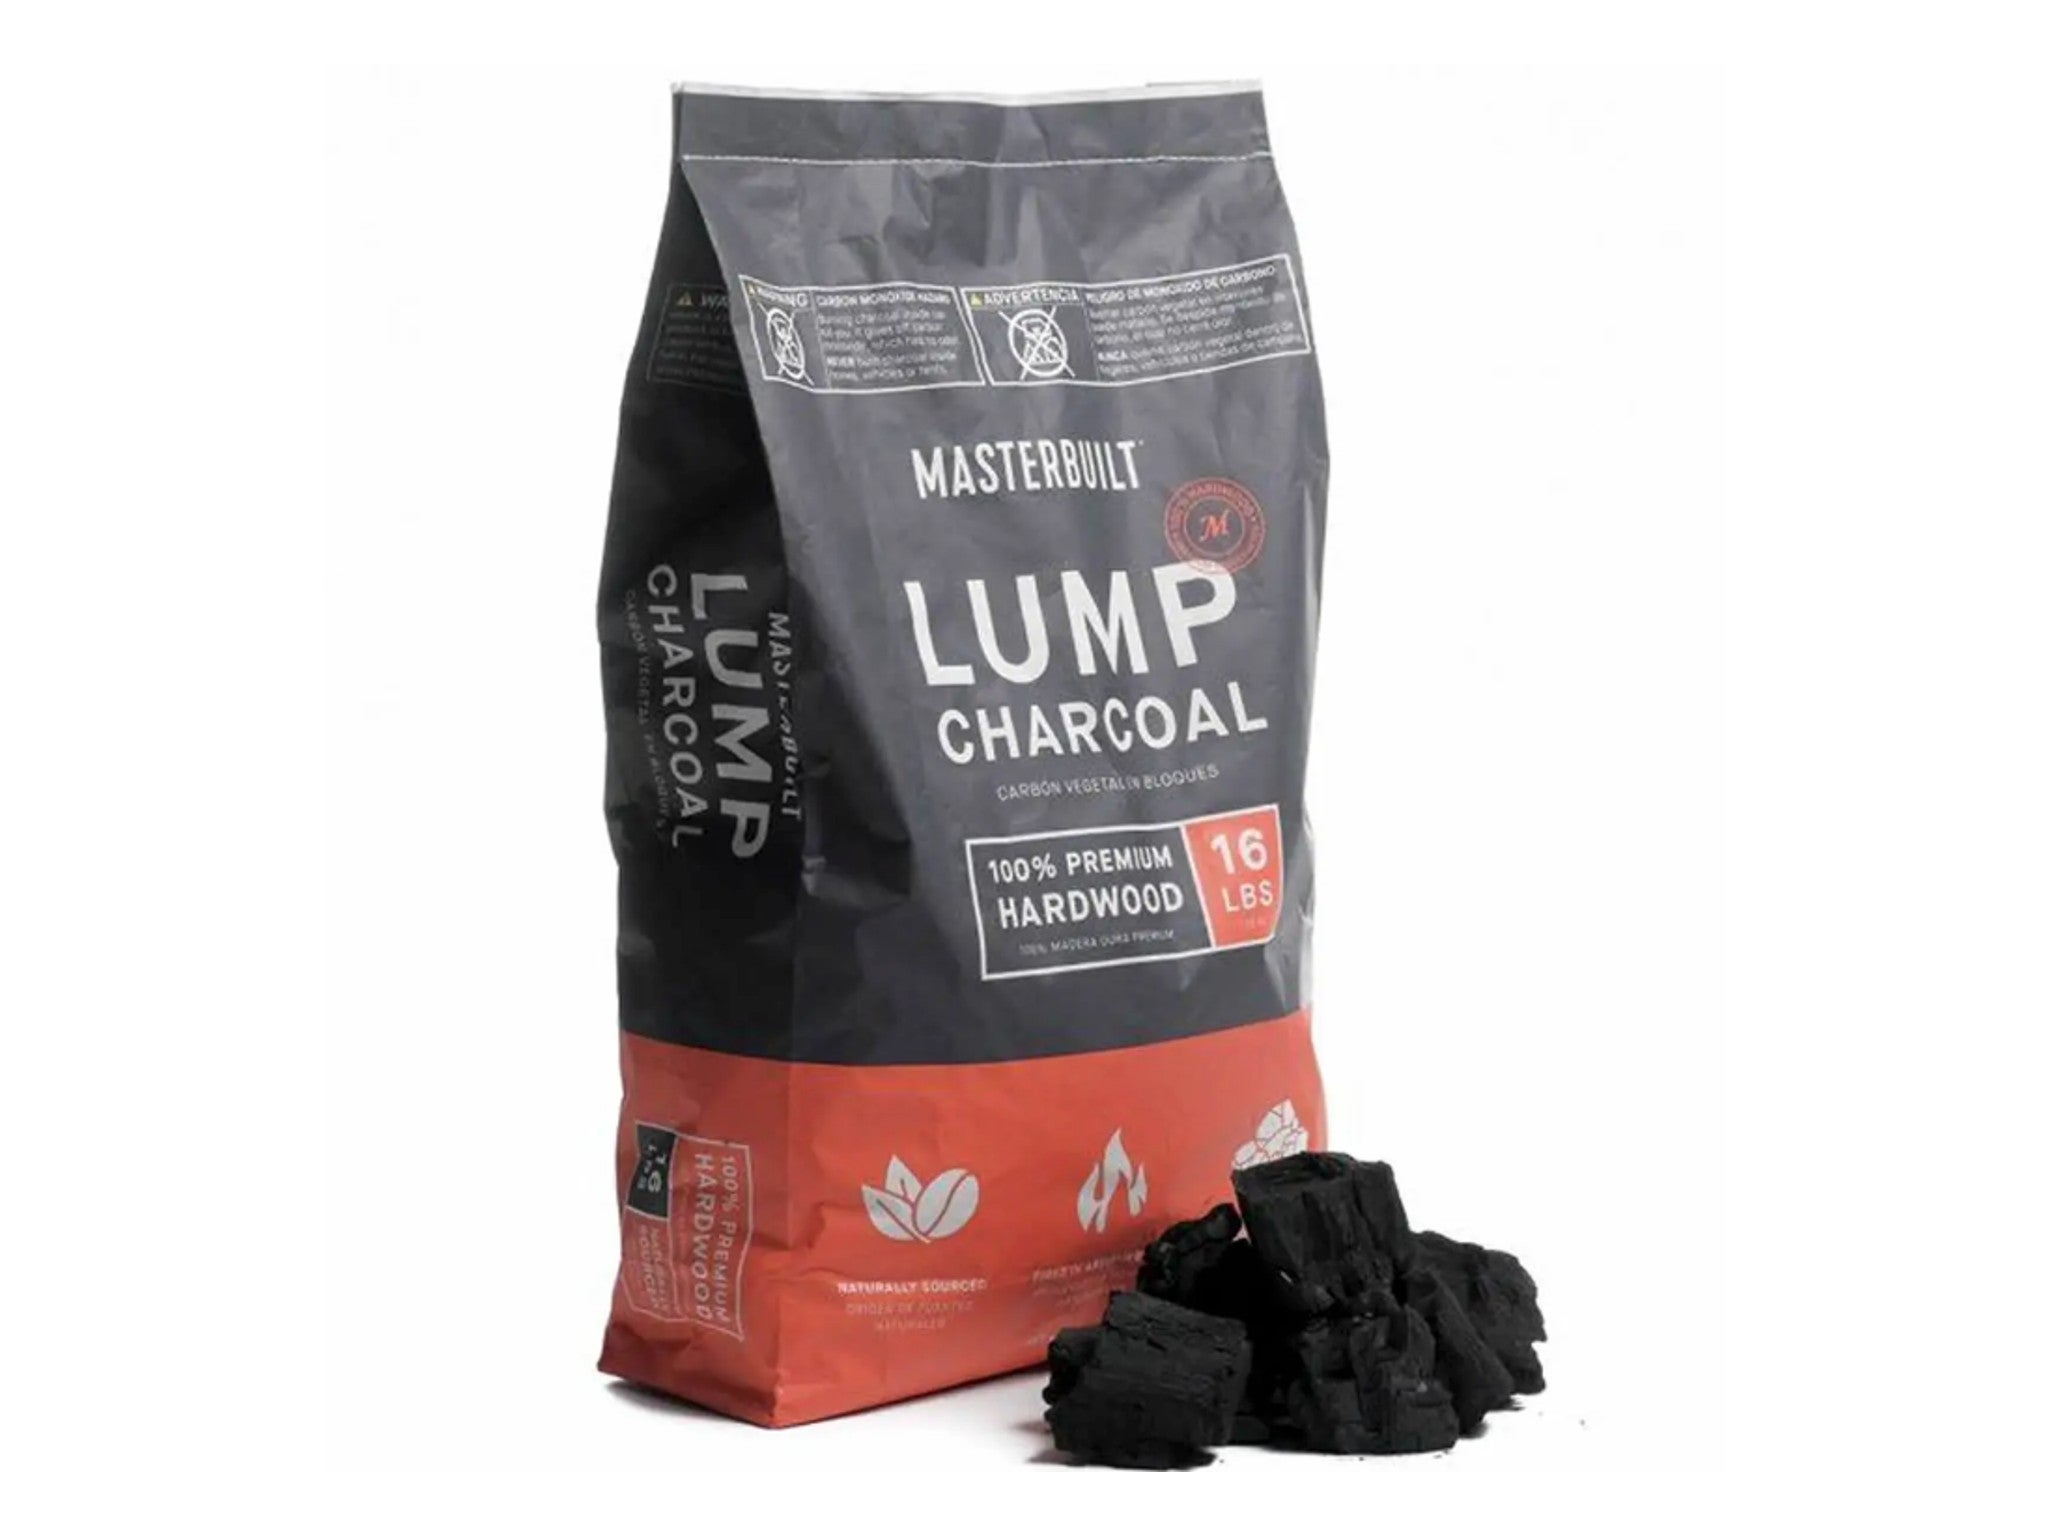 Masterbuilt lump charcoal